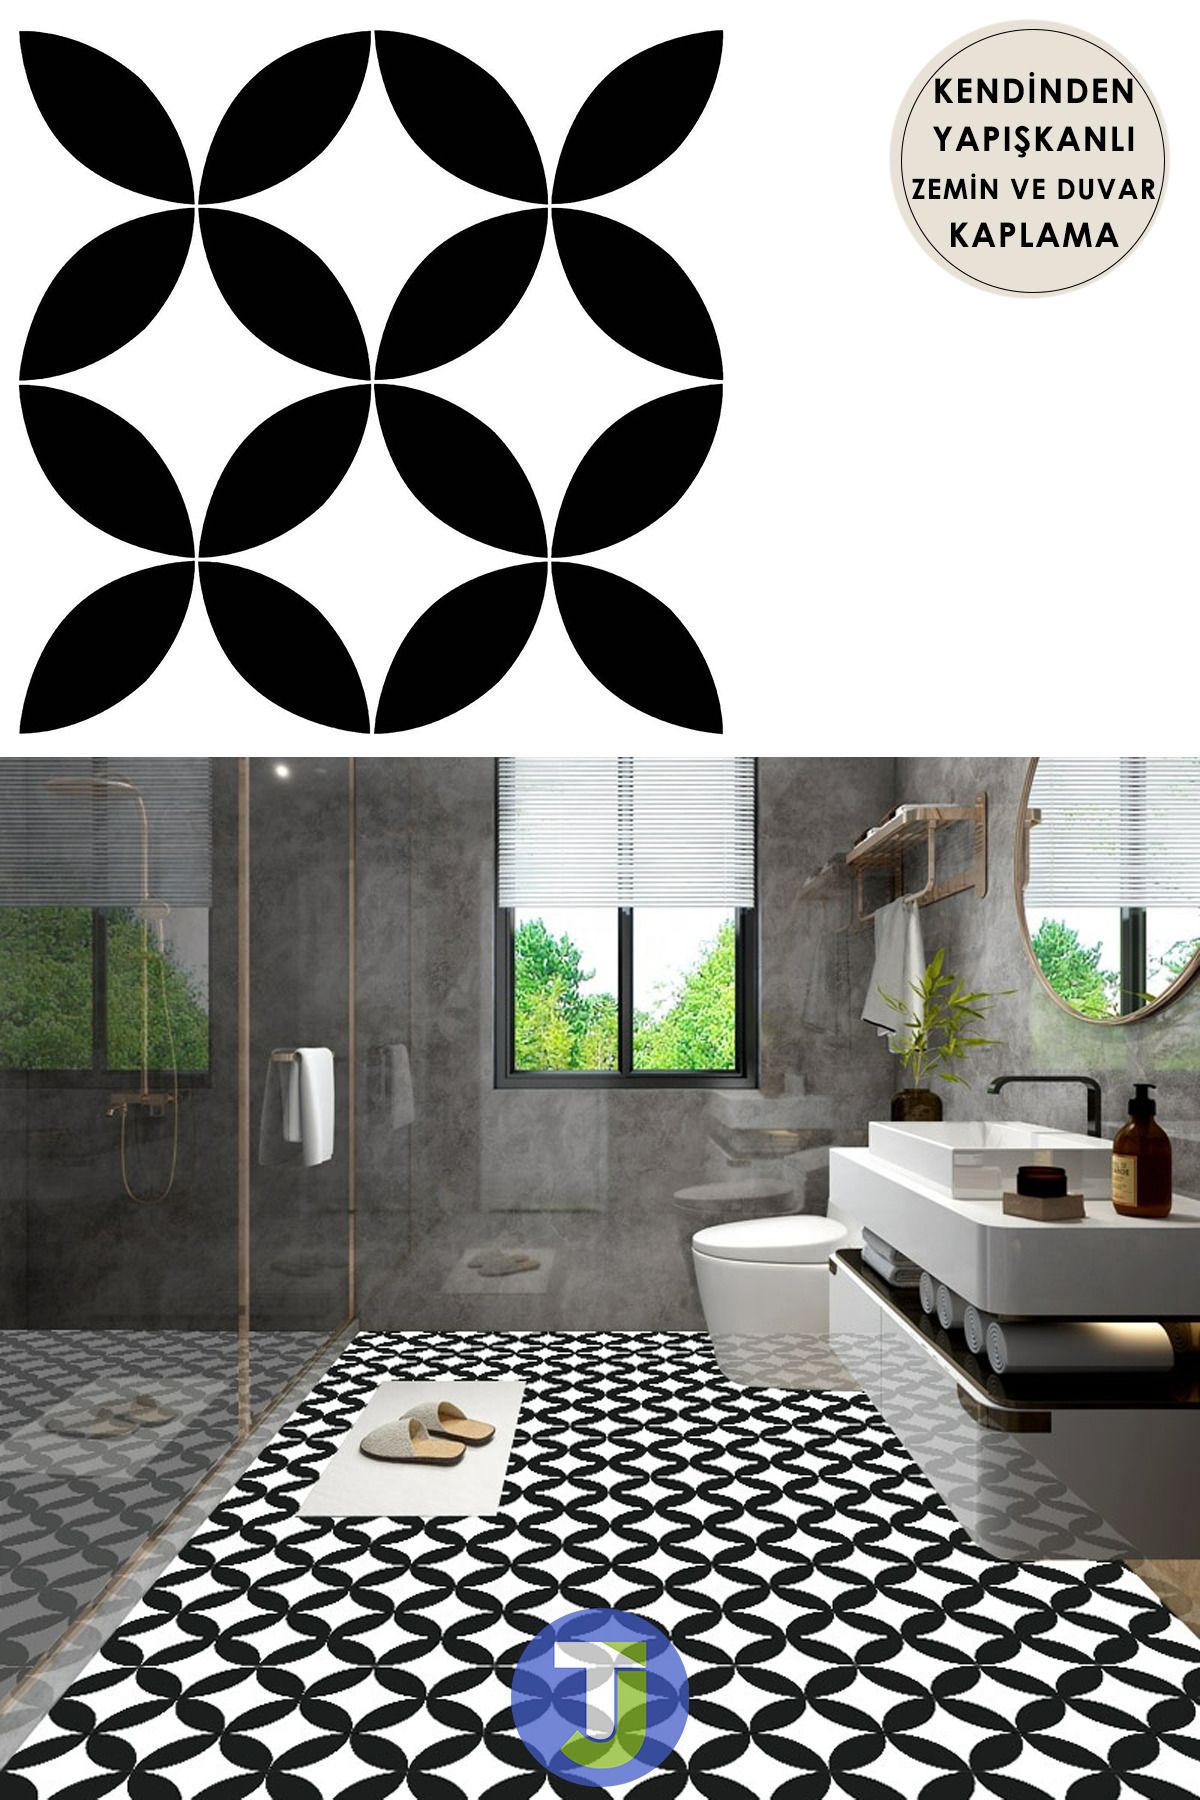 Technojet 1adet Kendinden Yapışkanlı Modern Tasarımlı Mutfak Banyo Zemin Duvar Kaplama Pvc 30cm×30cm